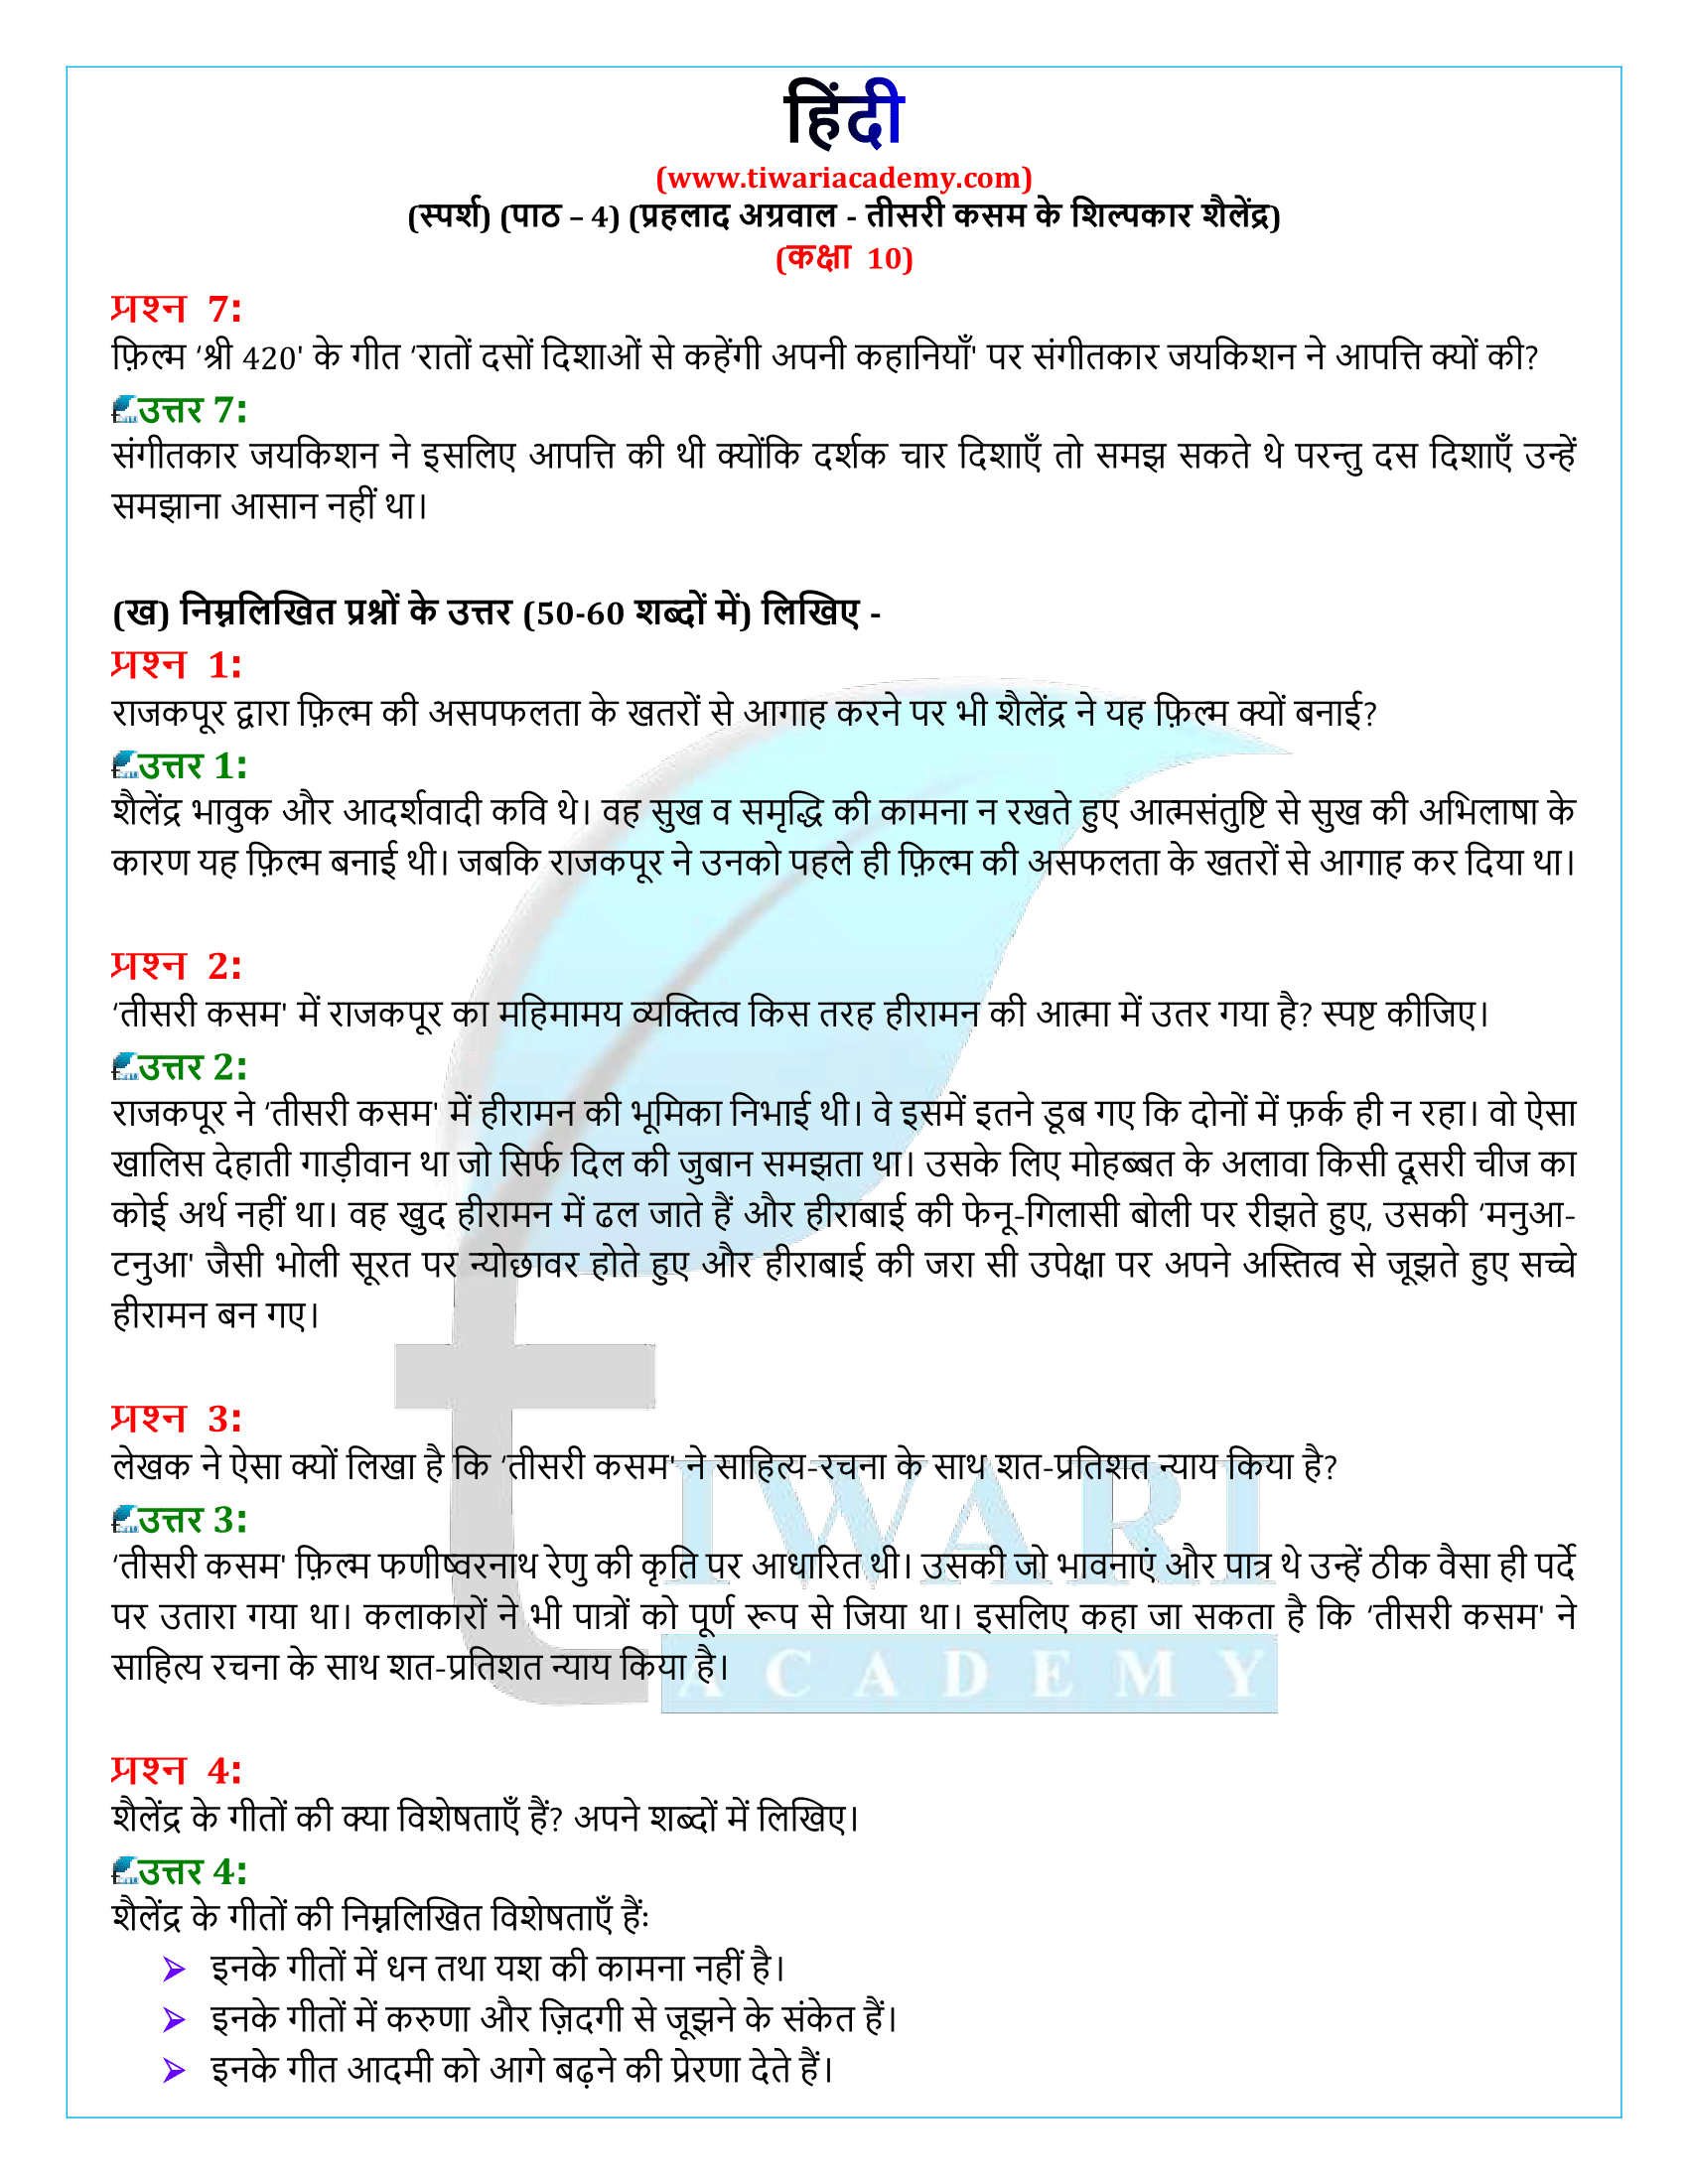 कक्षा 10 हिंदी स्पर्श गद्य अध्याय 4